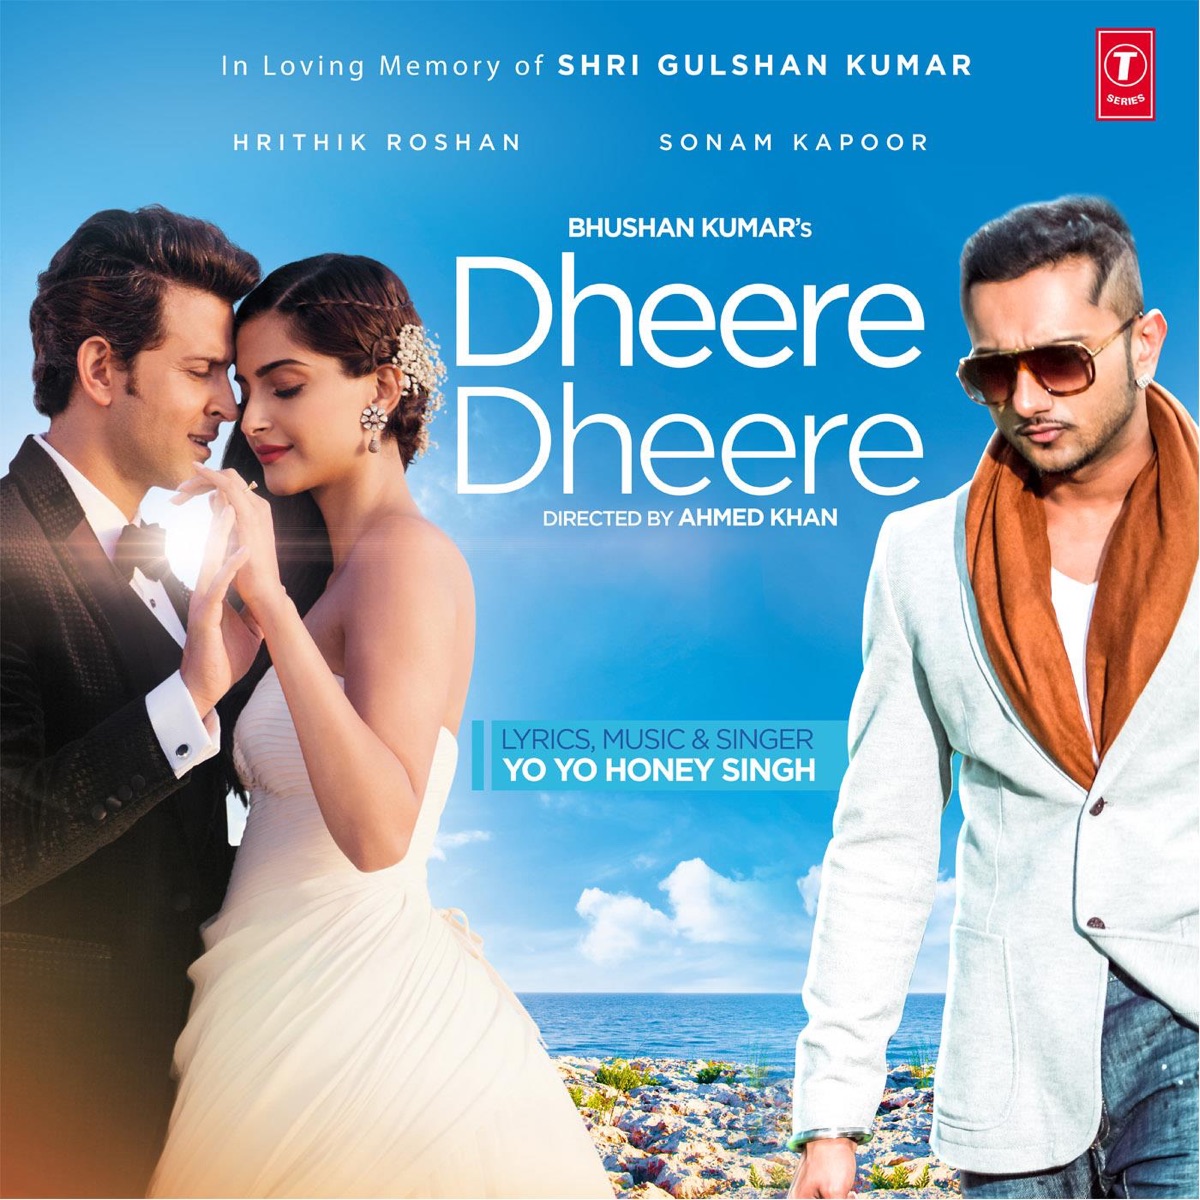 Dheere Dheere - Single - Album by Yo Yo Honey Singh - Apple Music